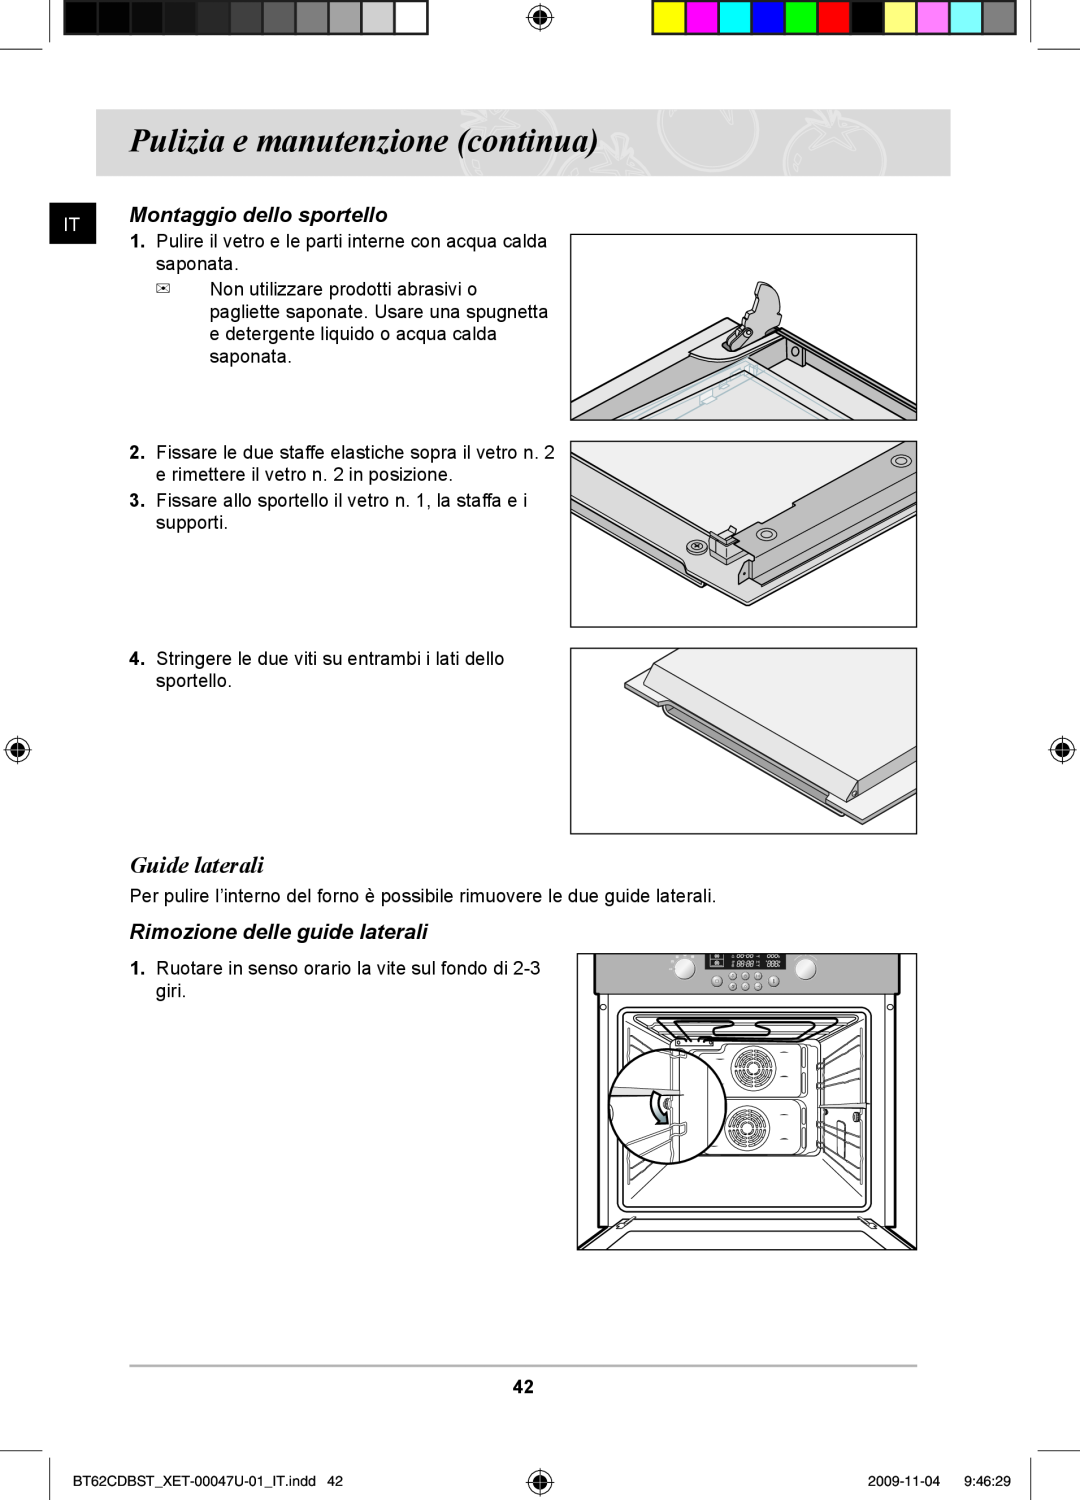 Samsung BT62CDBST/XET manual Guide laterali, Montaggio dello sportello, Rimozione delle guide laterali 